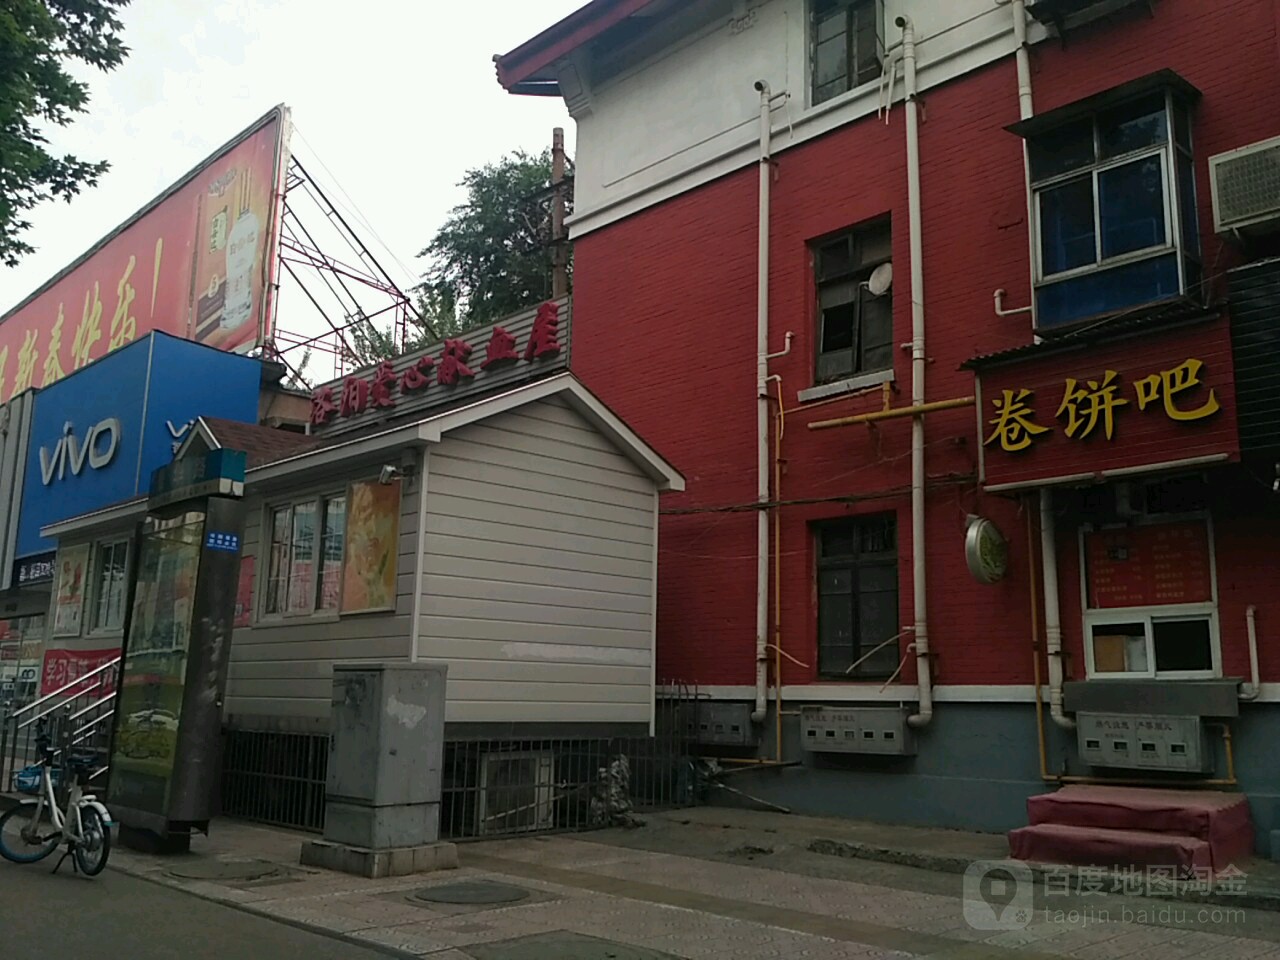 愛心獻血屋(上海市場)